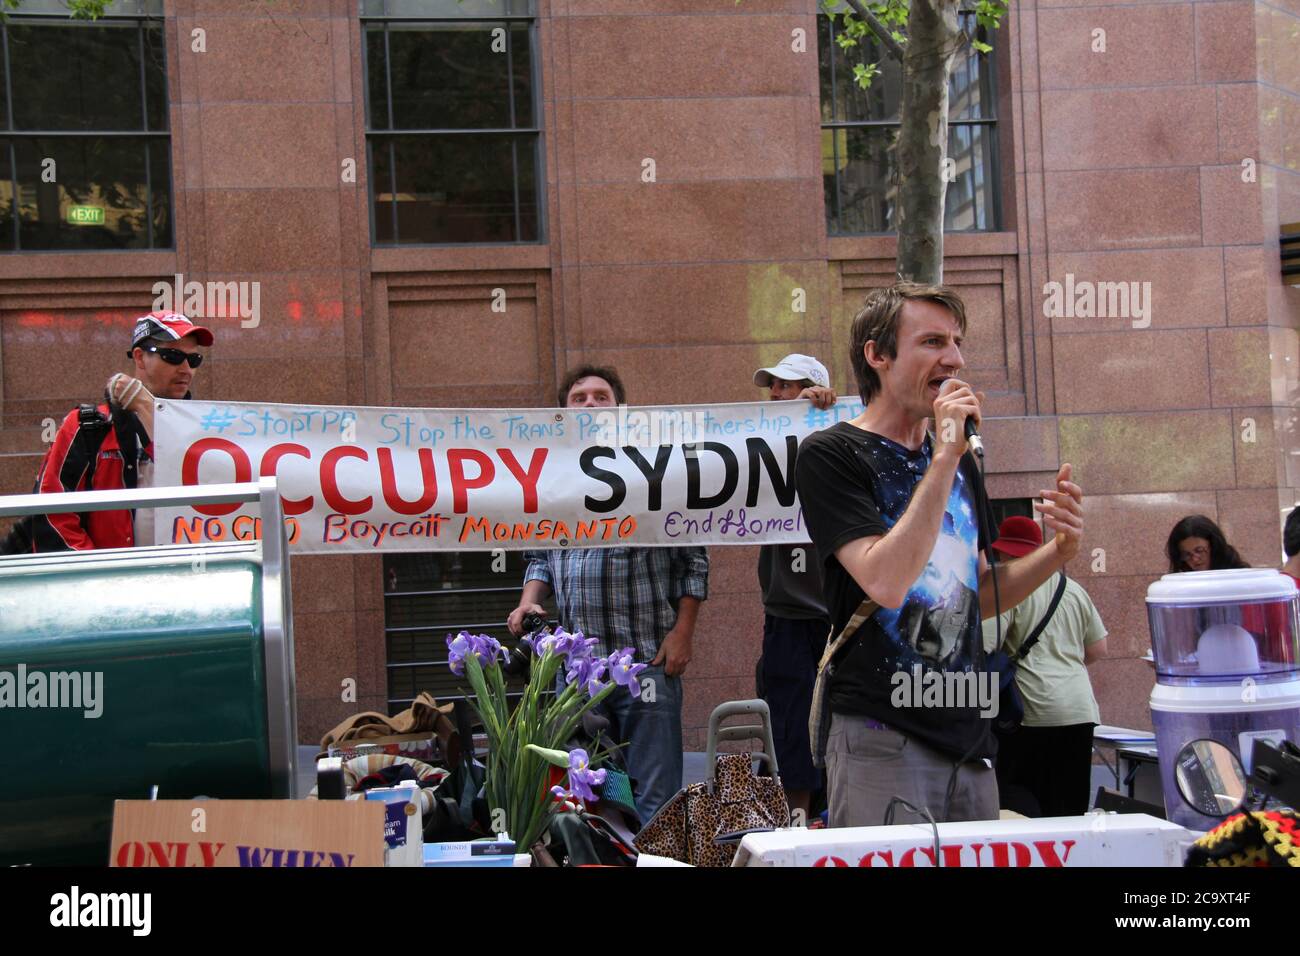 Abgebildet ist ein Sprecher, der während der Kundgebung gegen Monsanto und GVO in der Siedlung Occupy Sydney steht. Stockfoto